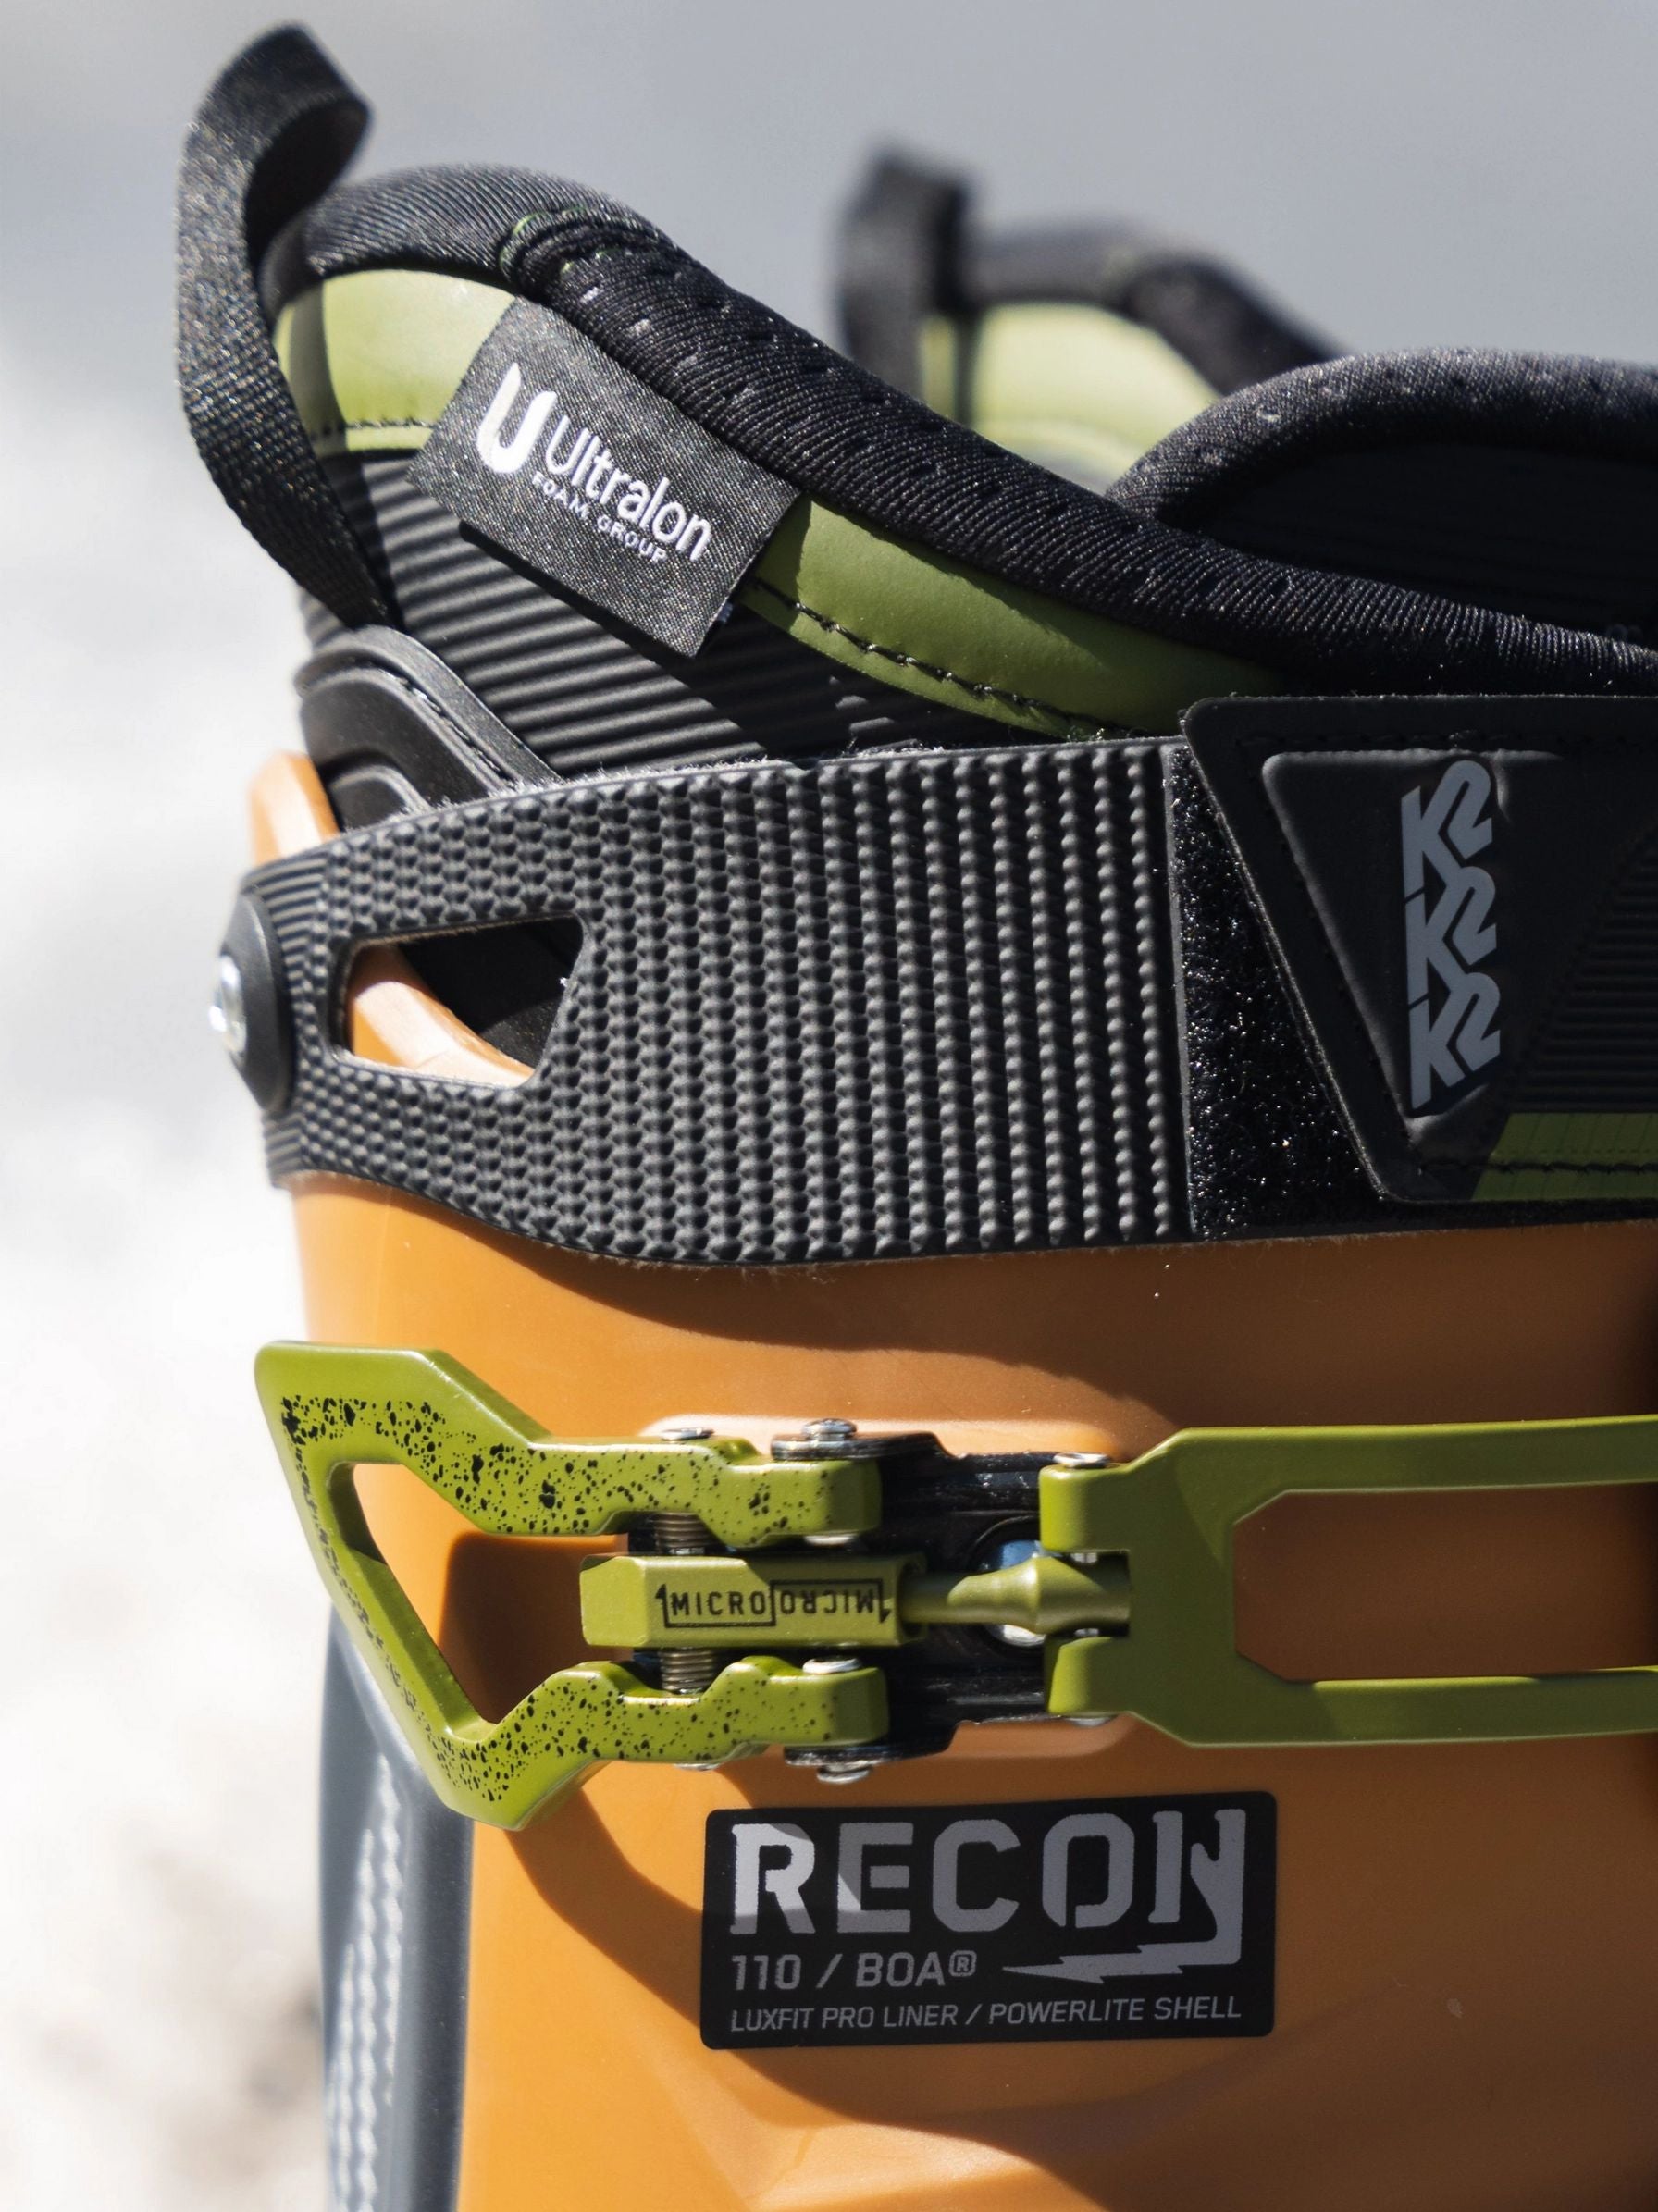 K2 Recon 110 BOA Ski Boots Multicolor Ski Boots